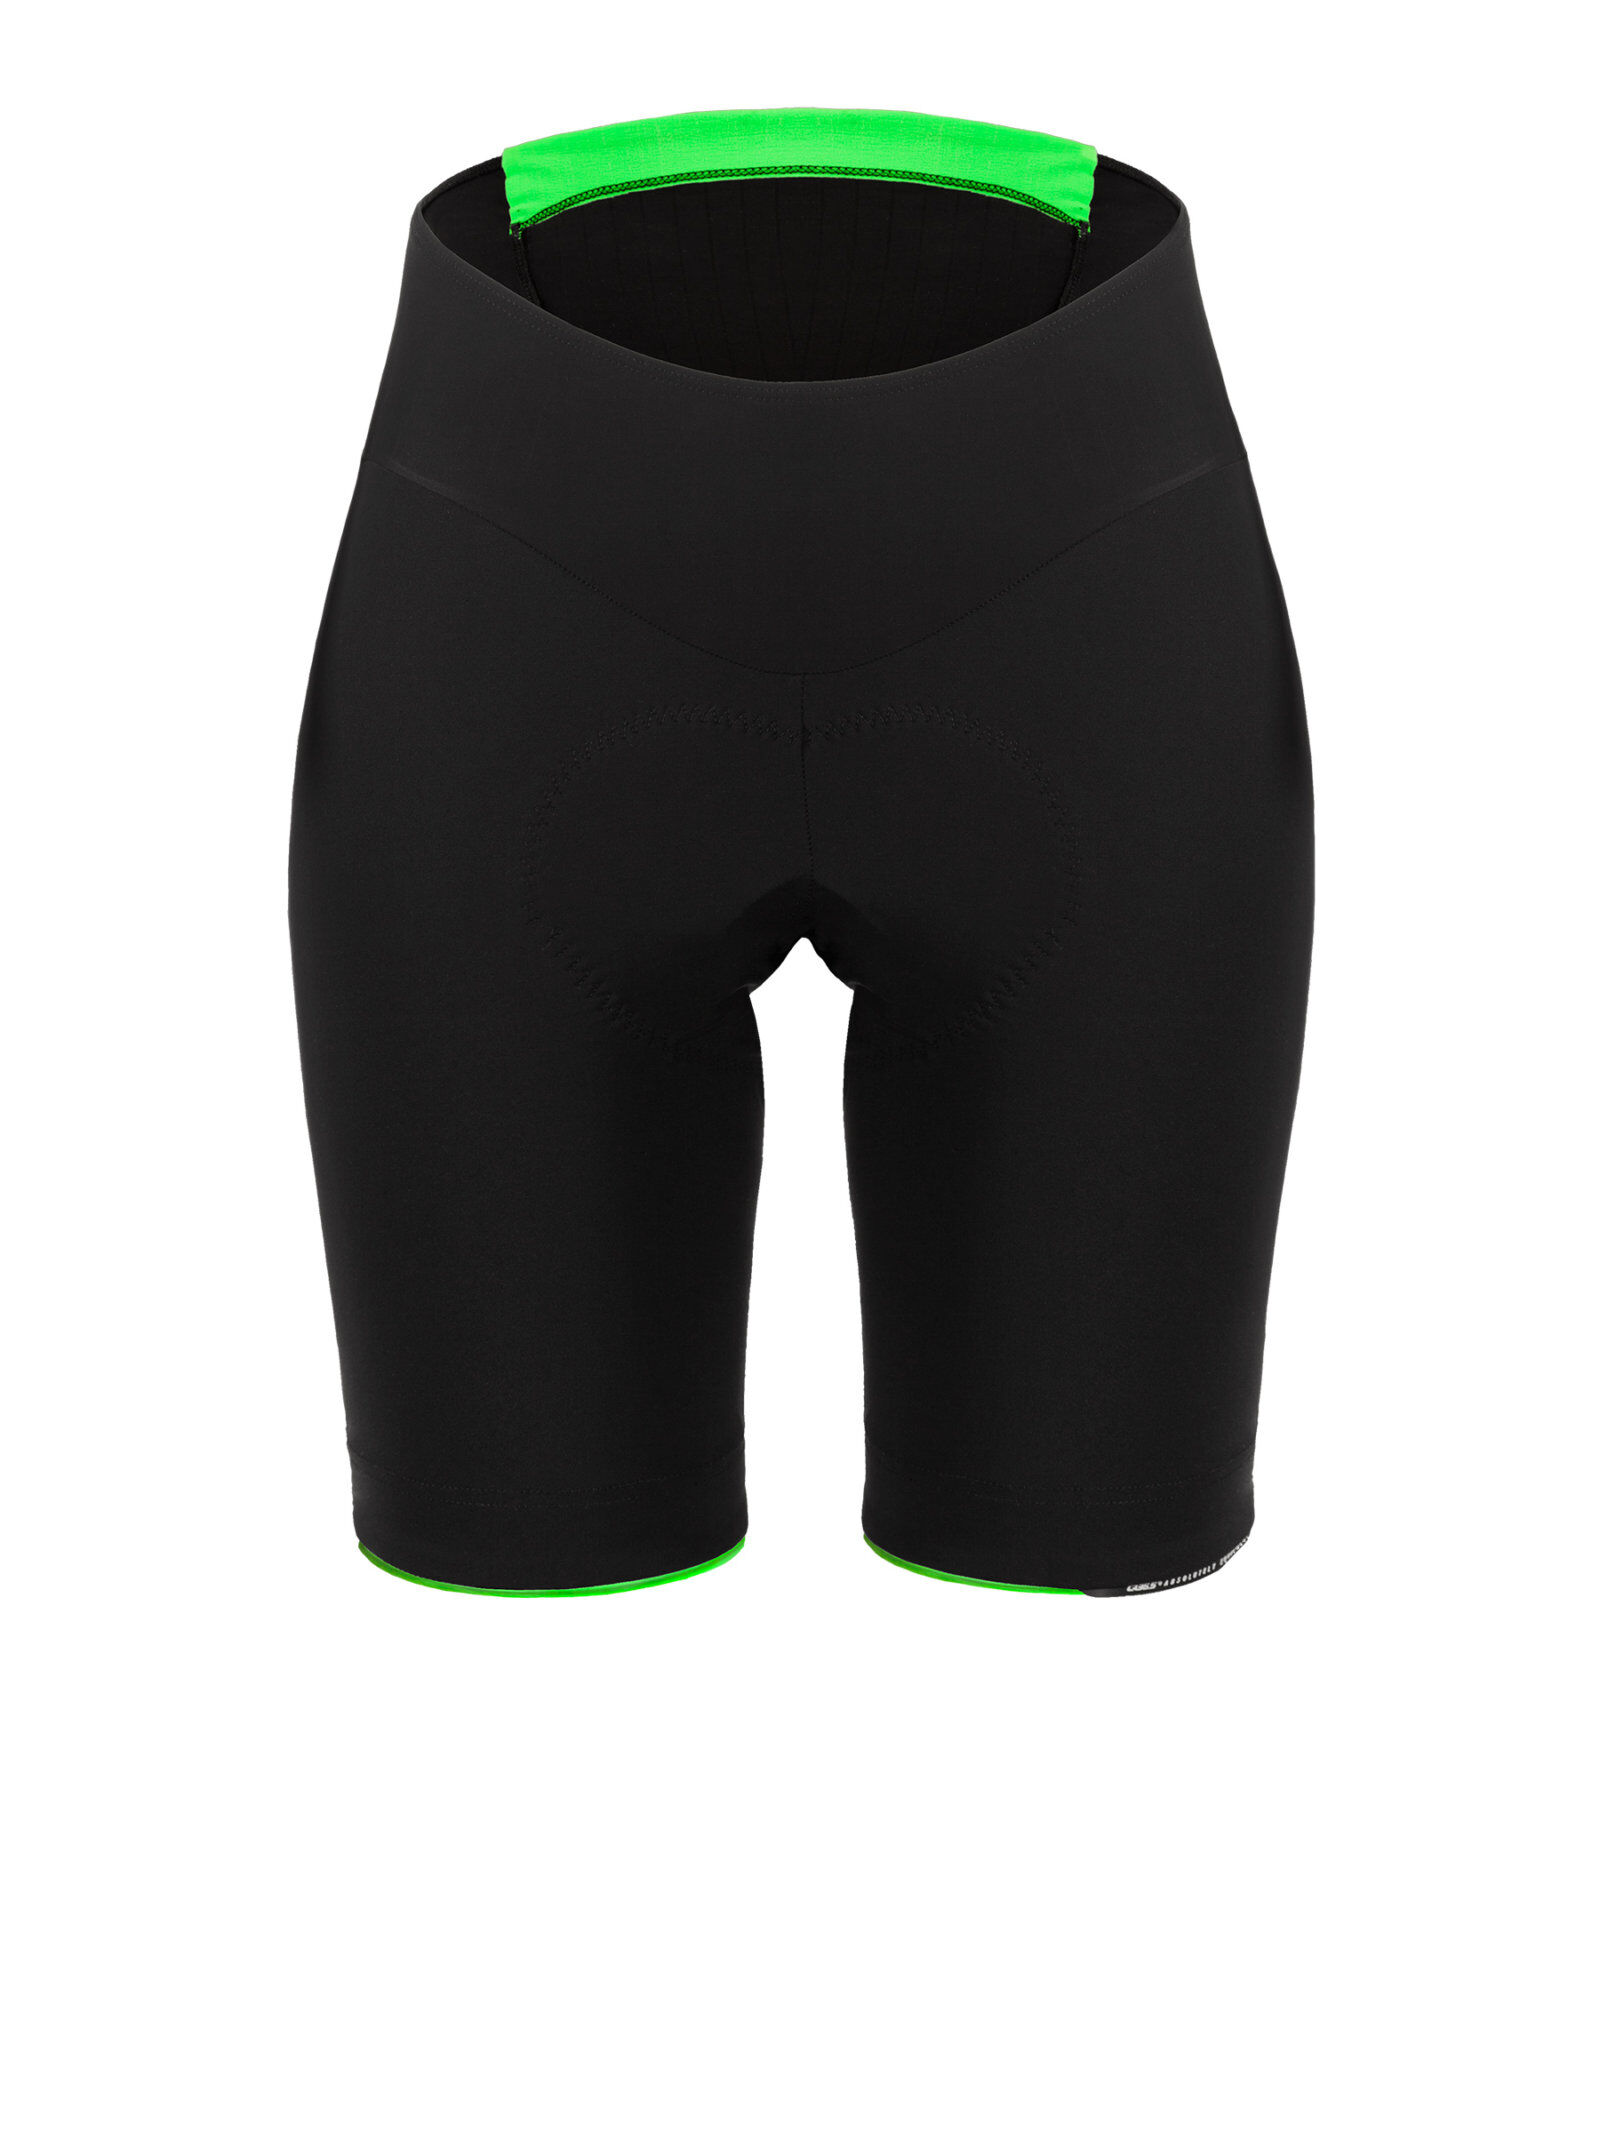 Q36.5 Half Short L1 - Cycling shorts - Men's